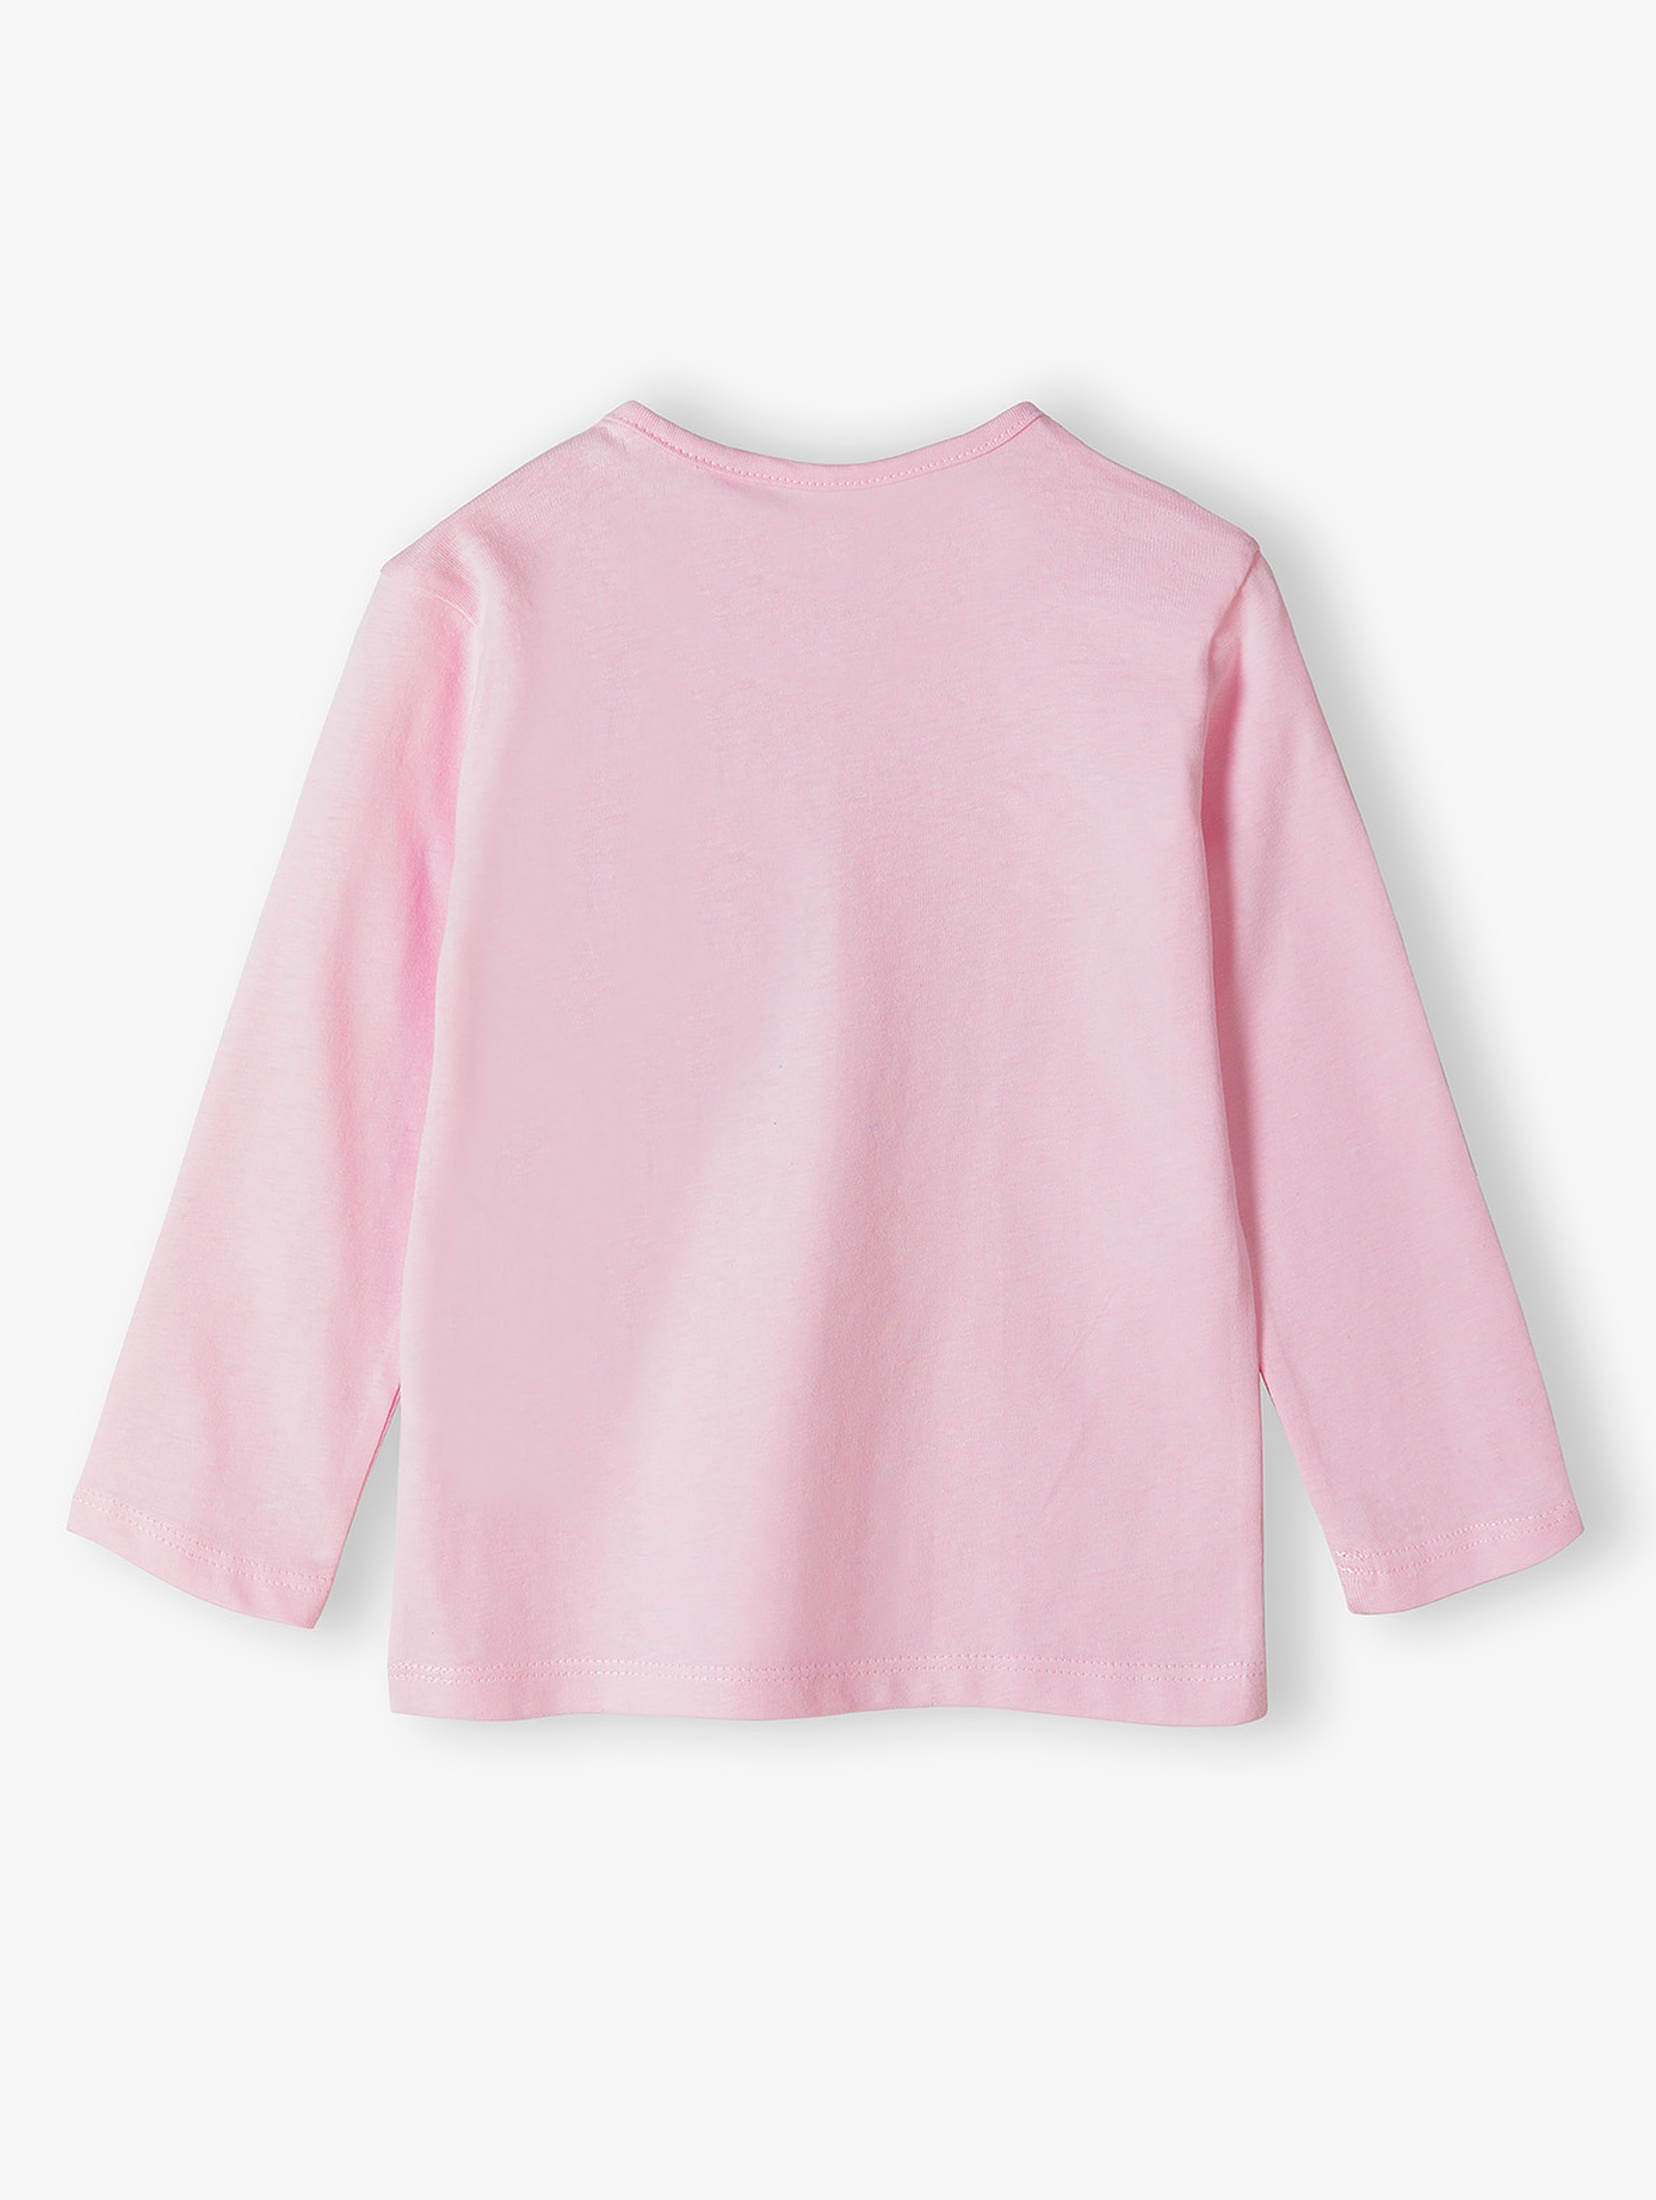 Różowa bluzka niemowlęca z długim rękawem - aplikacja 3D